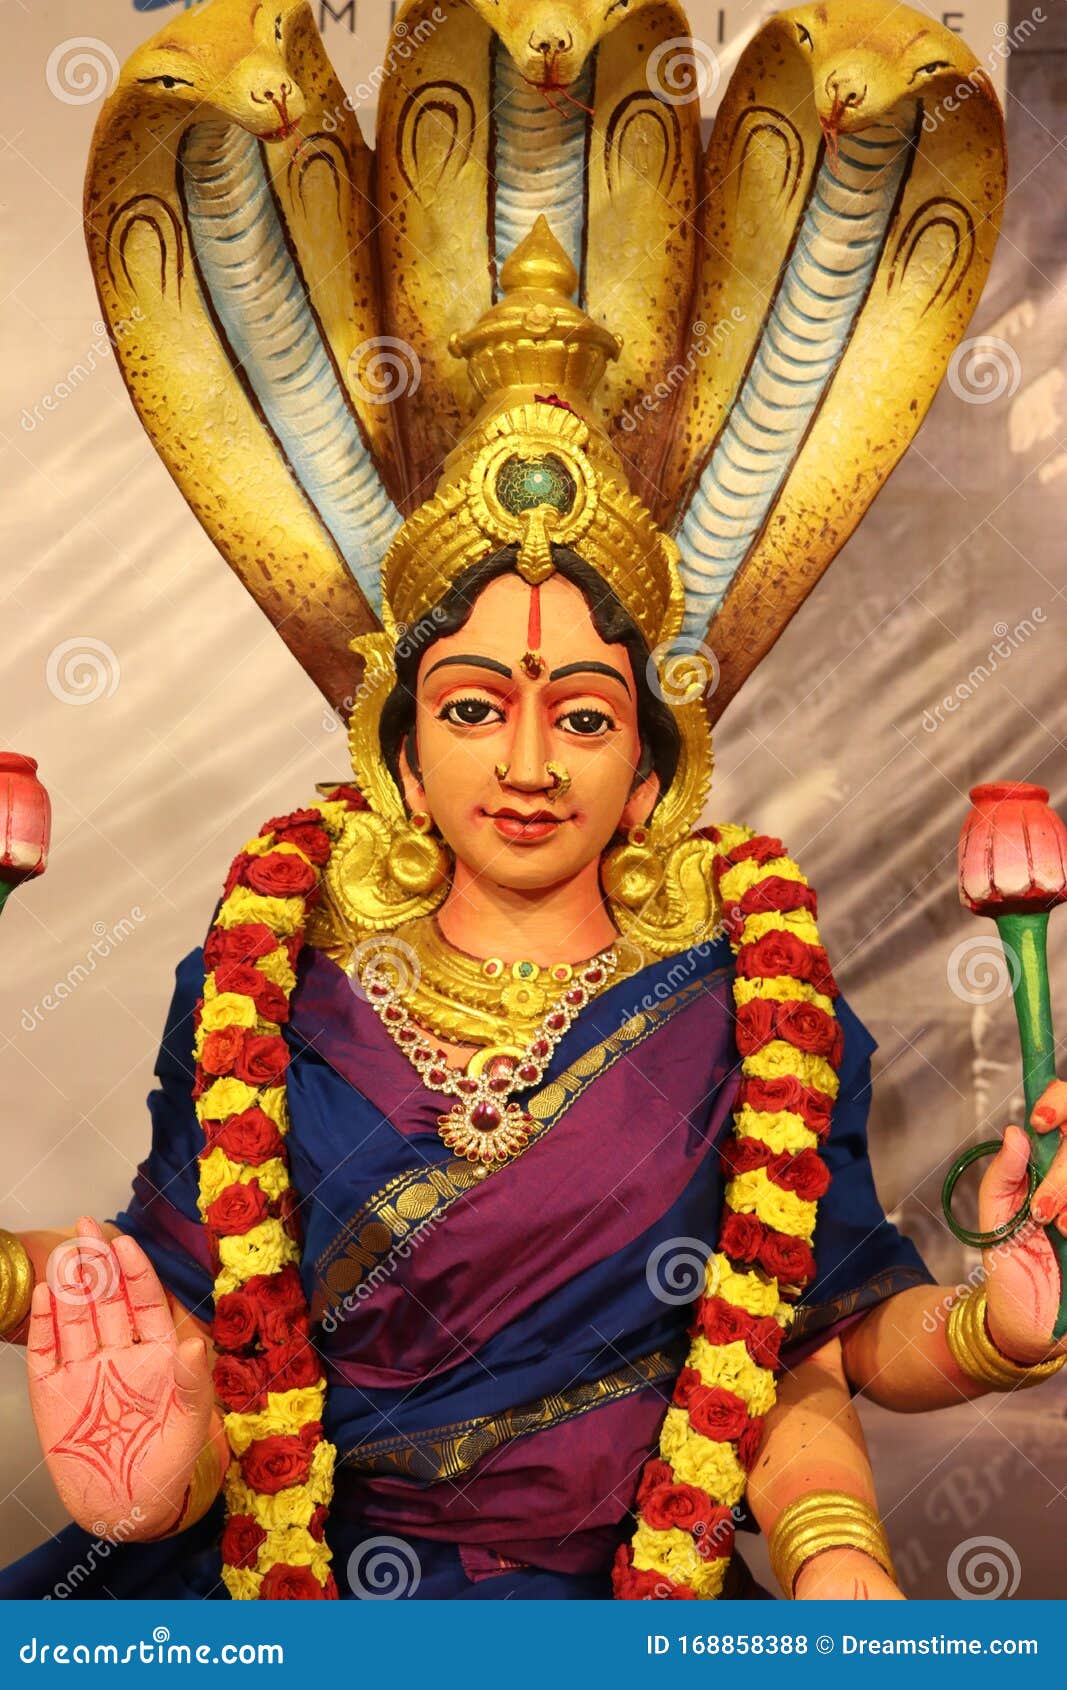 Goddess Angali Amman Close Up Stock Photo - Image of face, ambal ...